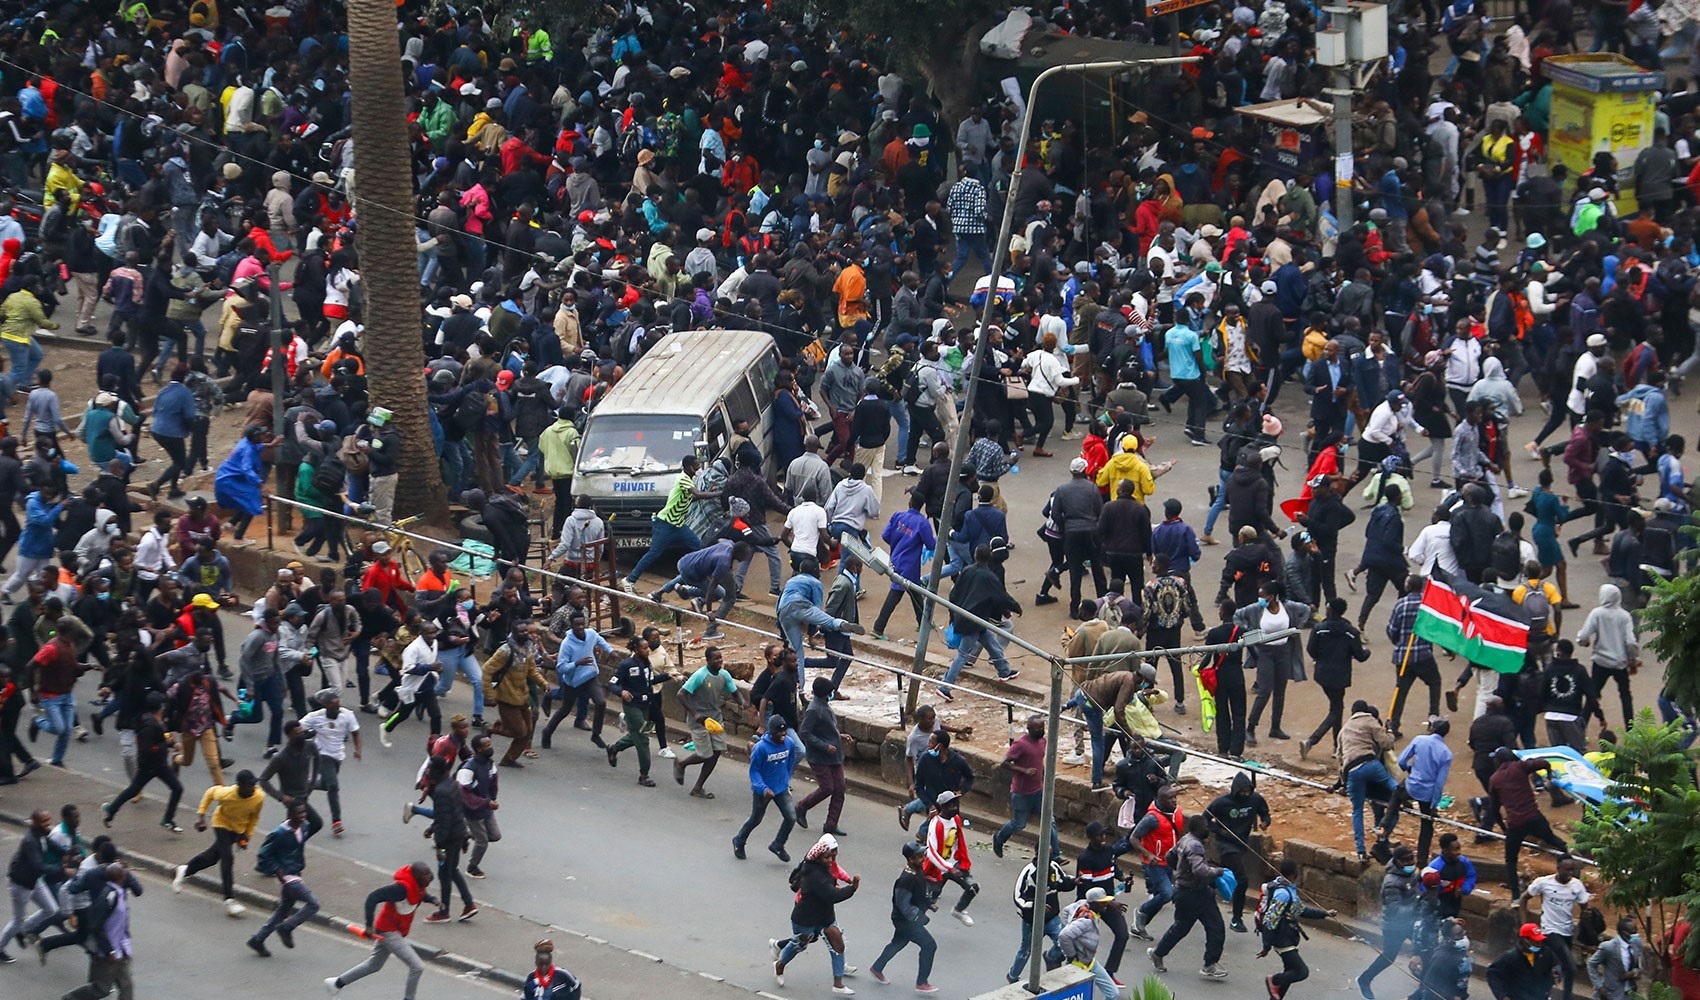 Kenya’da vergi yasası protestolarında ortalık karıştı: 1 ölü 200 yaralı